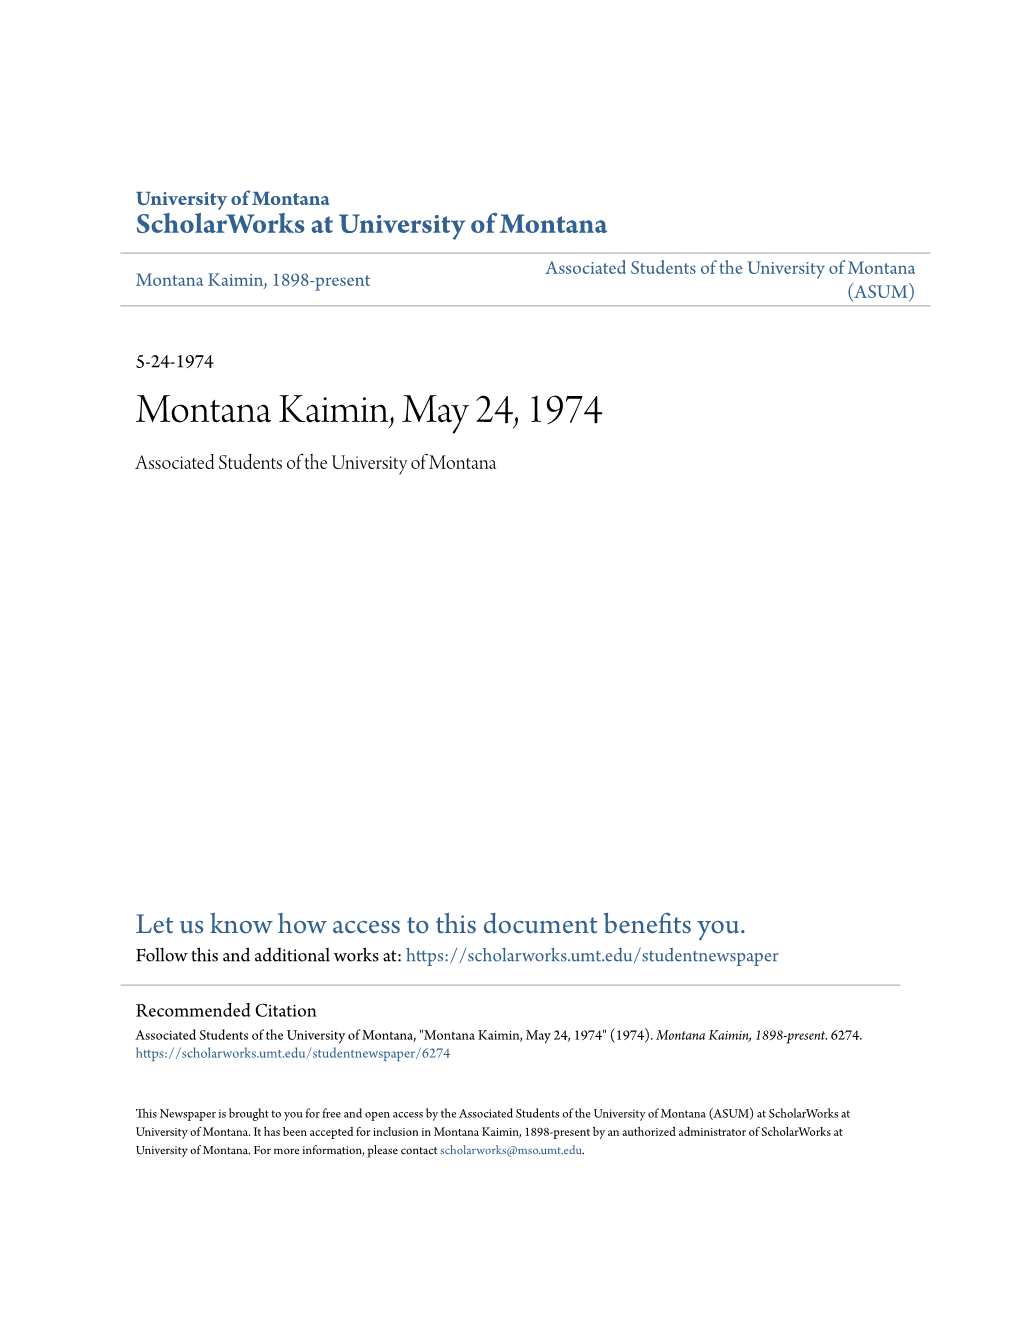 Montana Kaimin, May 24, 1974 Associated Students of the University of Montana